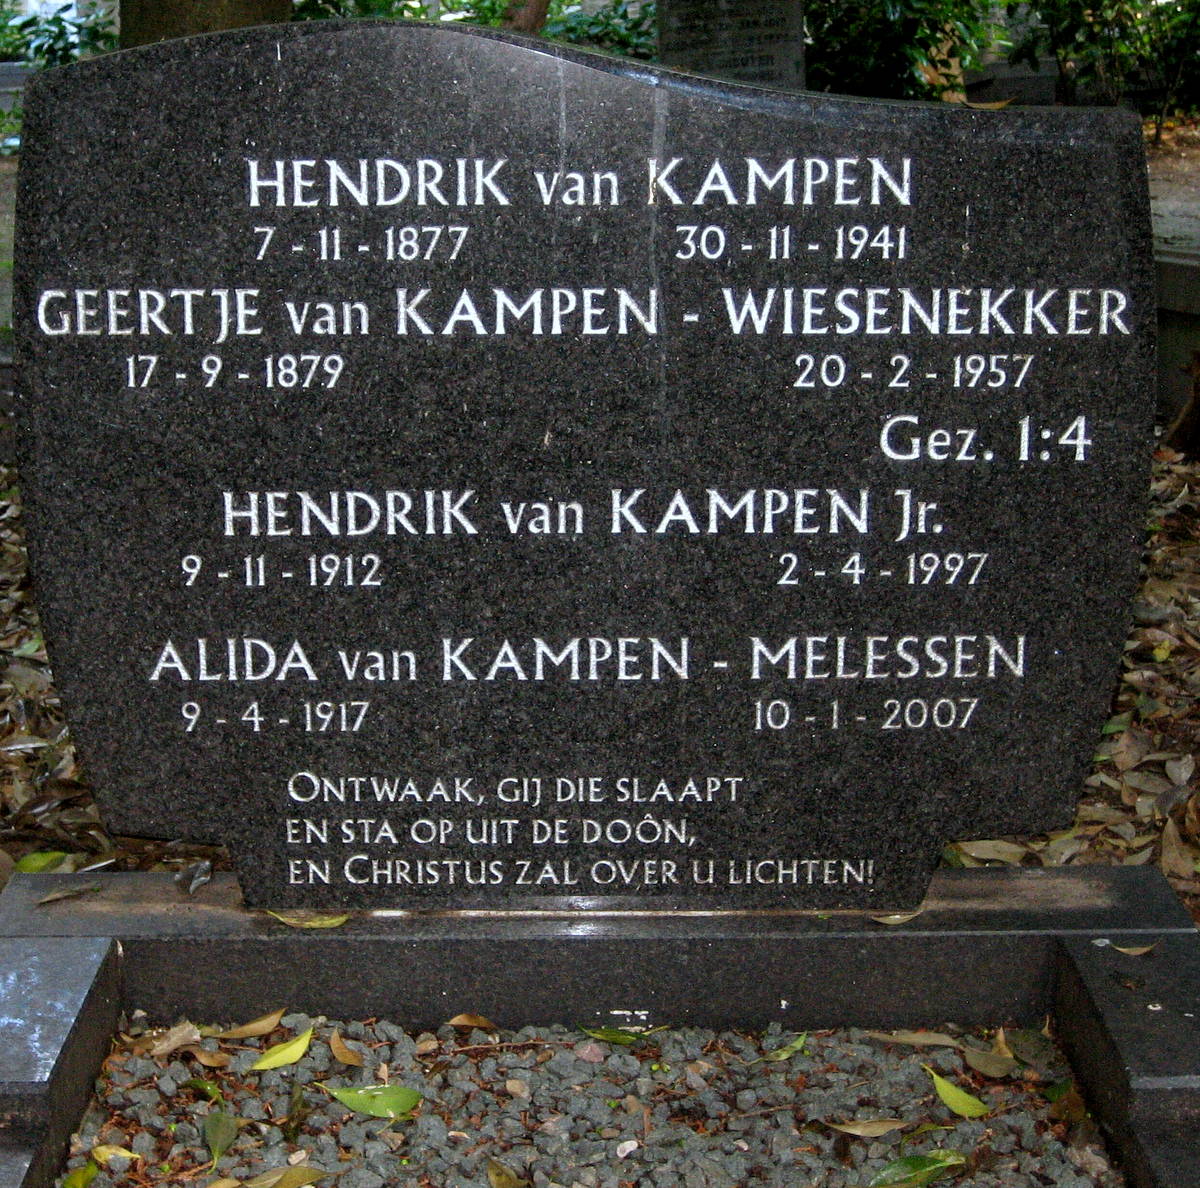 Tombstone Tuesday: Van Kampen